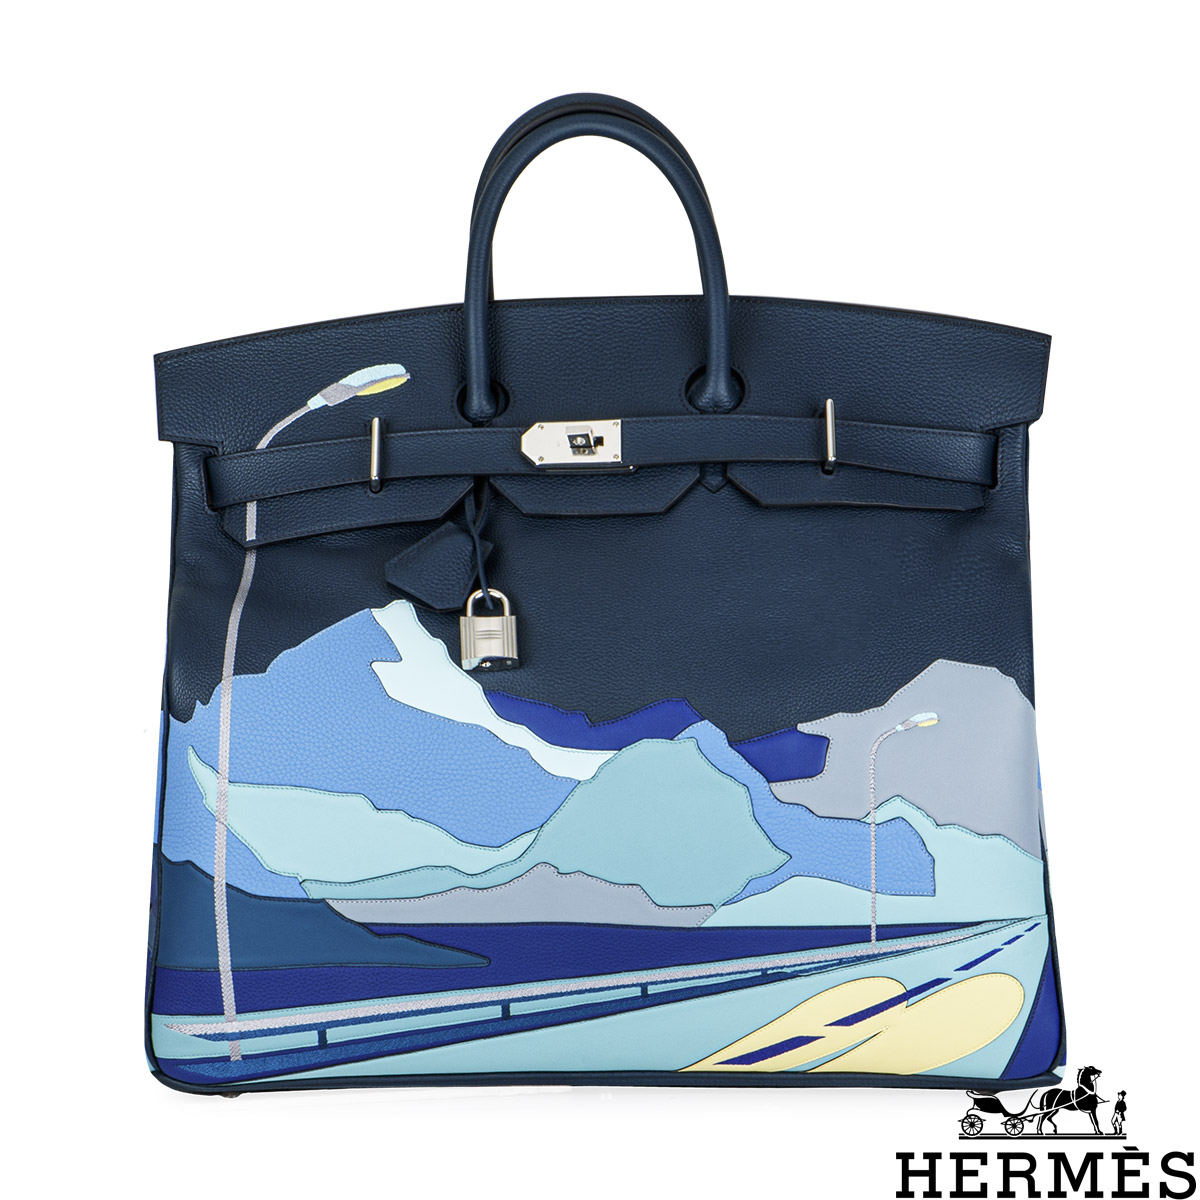 Hermès Birkin 40 cm second hand prices